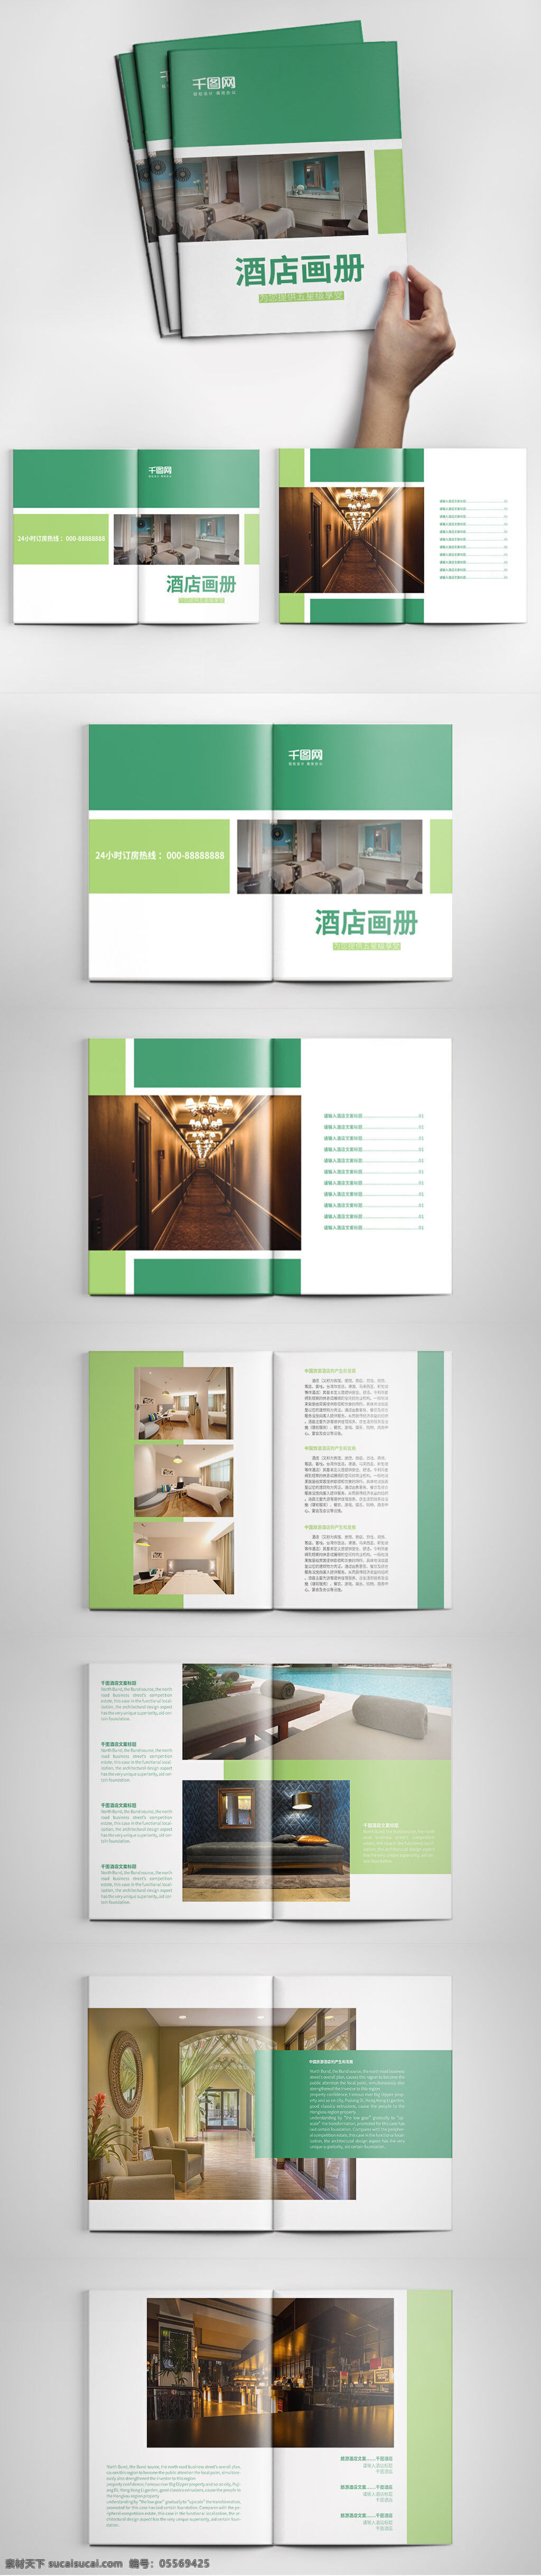 绿色 大气 酒店 画册设计 模板 创意画册模板 高档画册设计 公司画册 酒店画册 旅馆画册 绿色画册 宣传画册